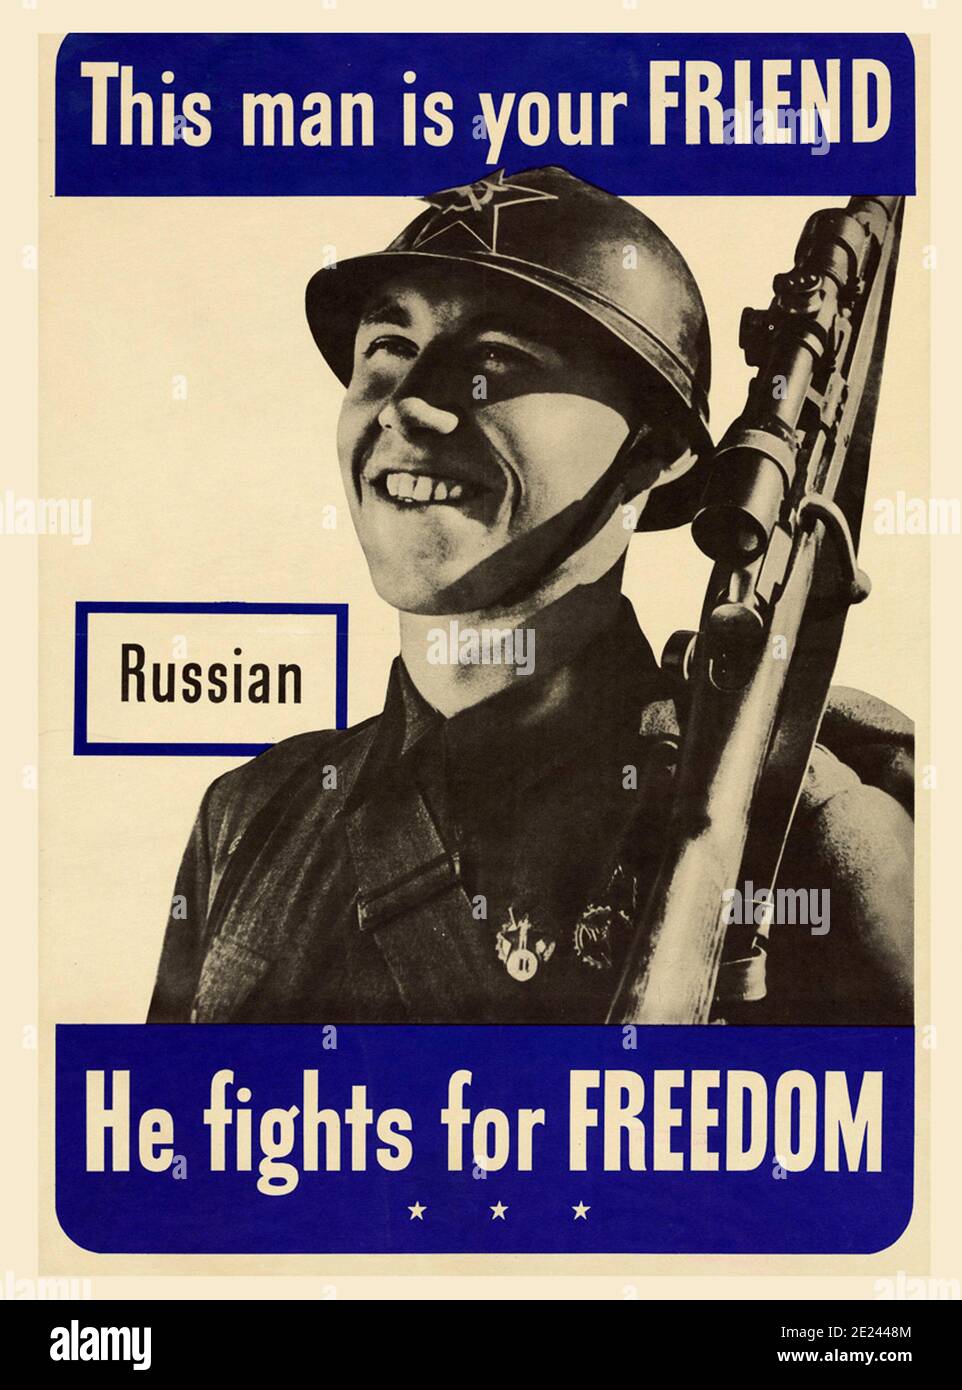 Amerikaner ein Propagandaplakat, das um Unterstützung für Amerikas Verbündete aufruft. Russen. Dieser Mann ist dein Freund. USA. 1942 Stockfoto